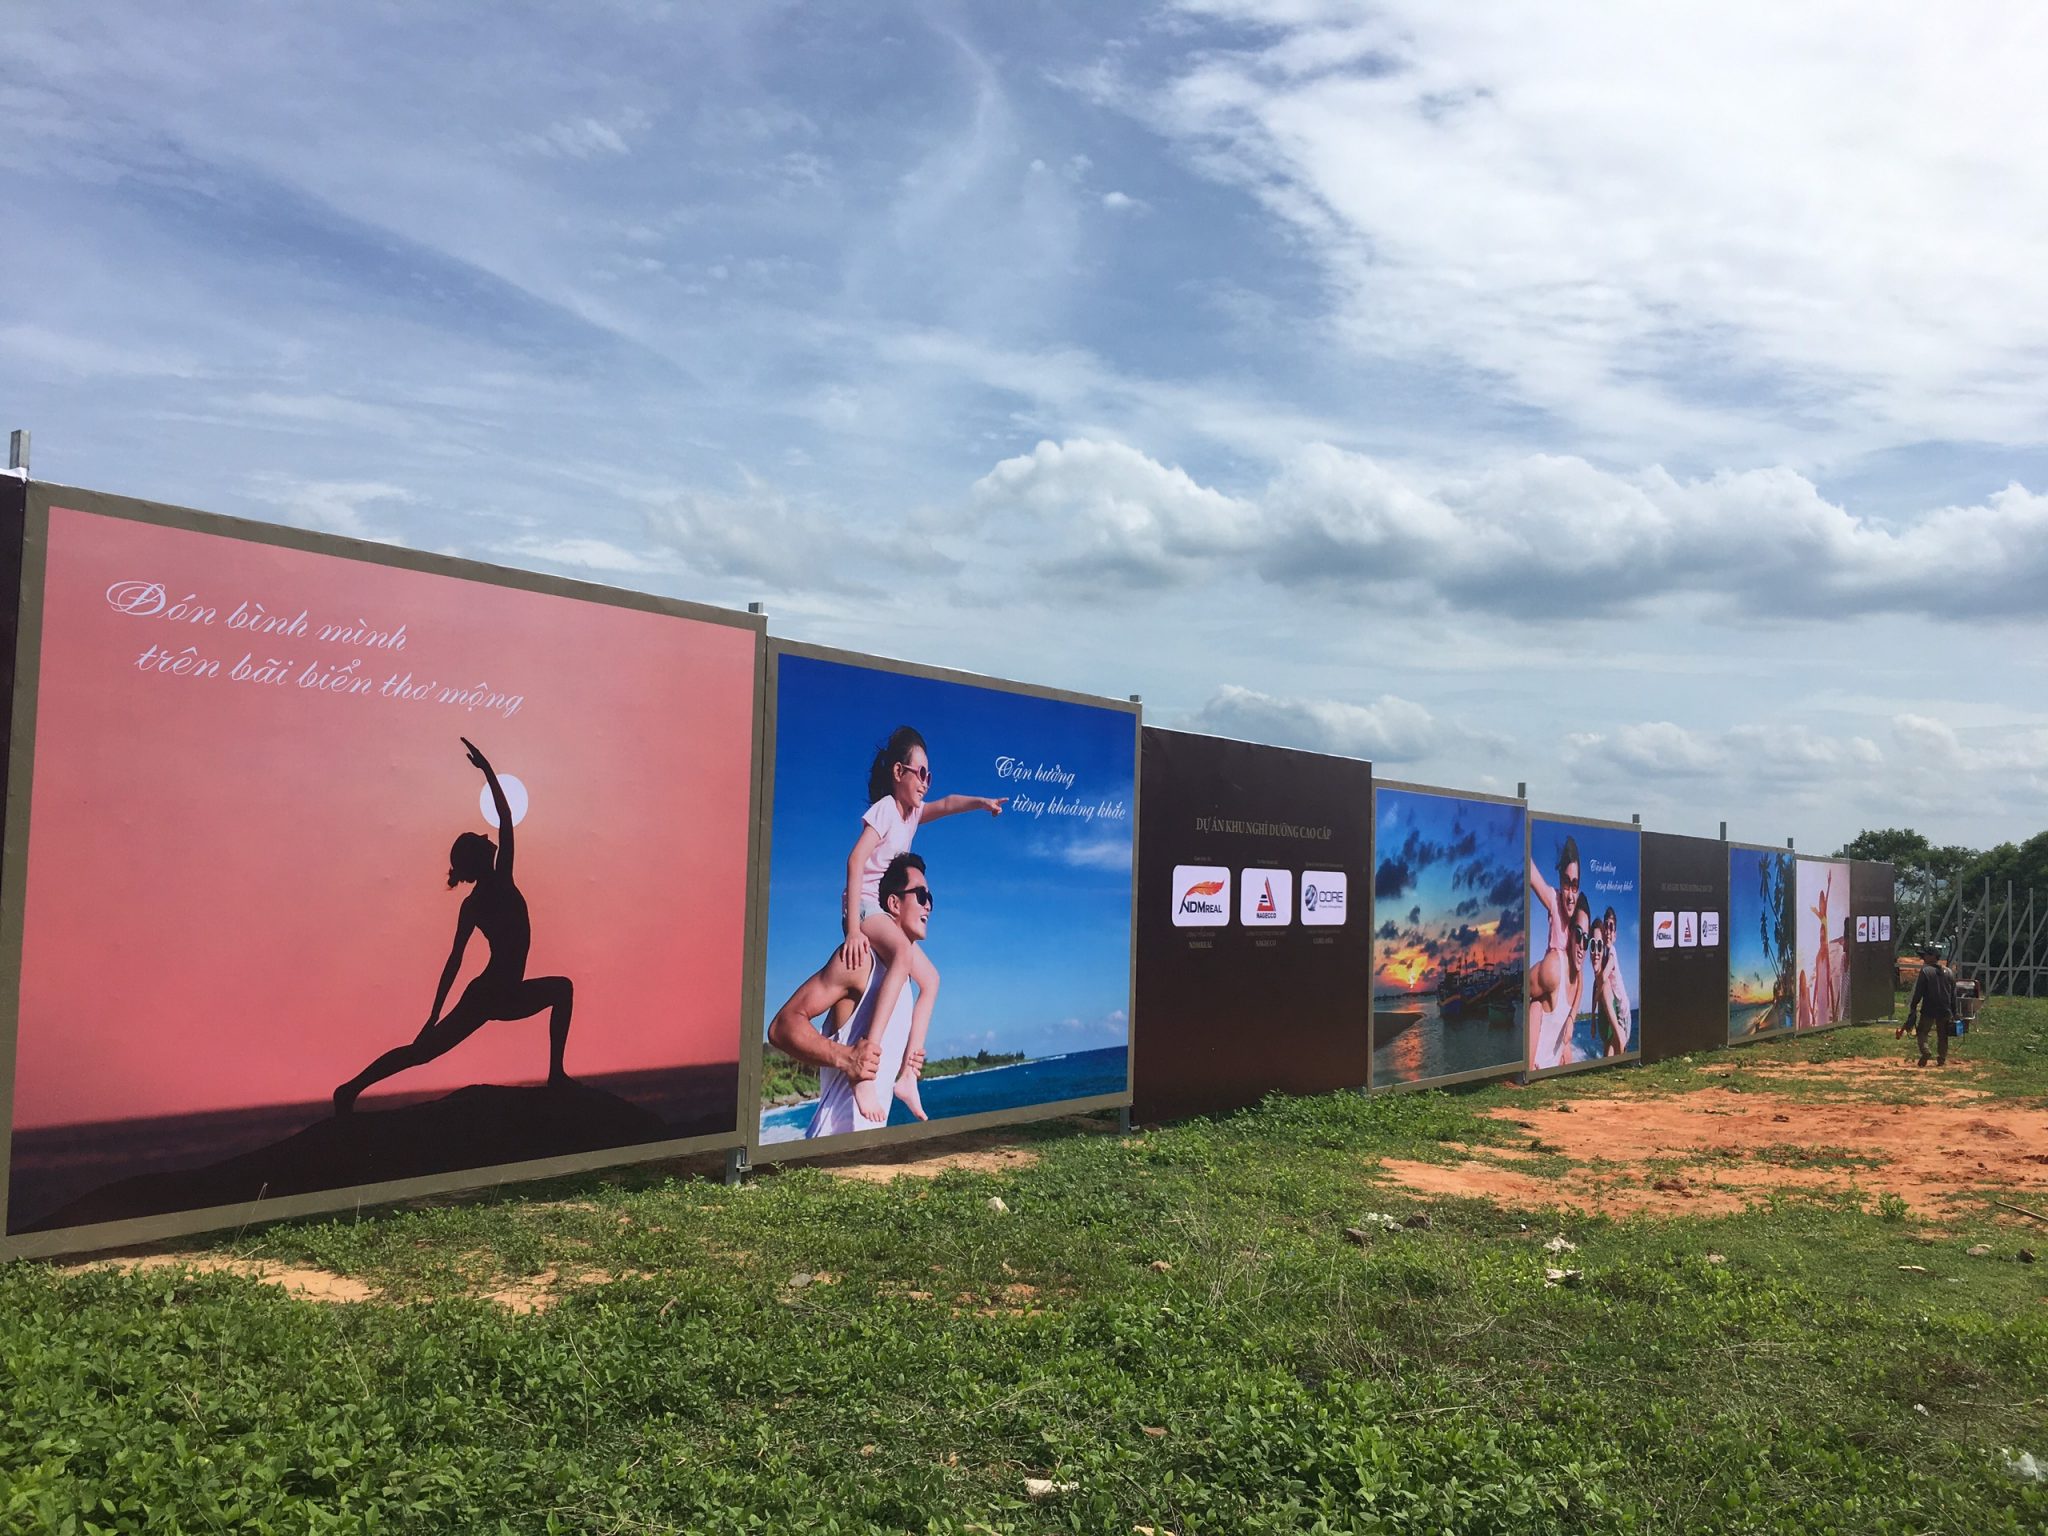 Thi công hàng rào quảng cáo - Phan Thiết, Bình Thuận